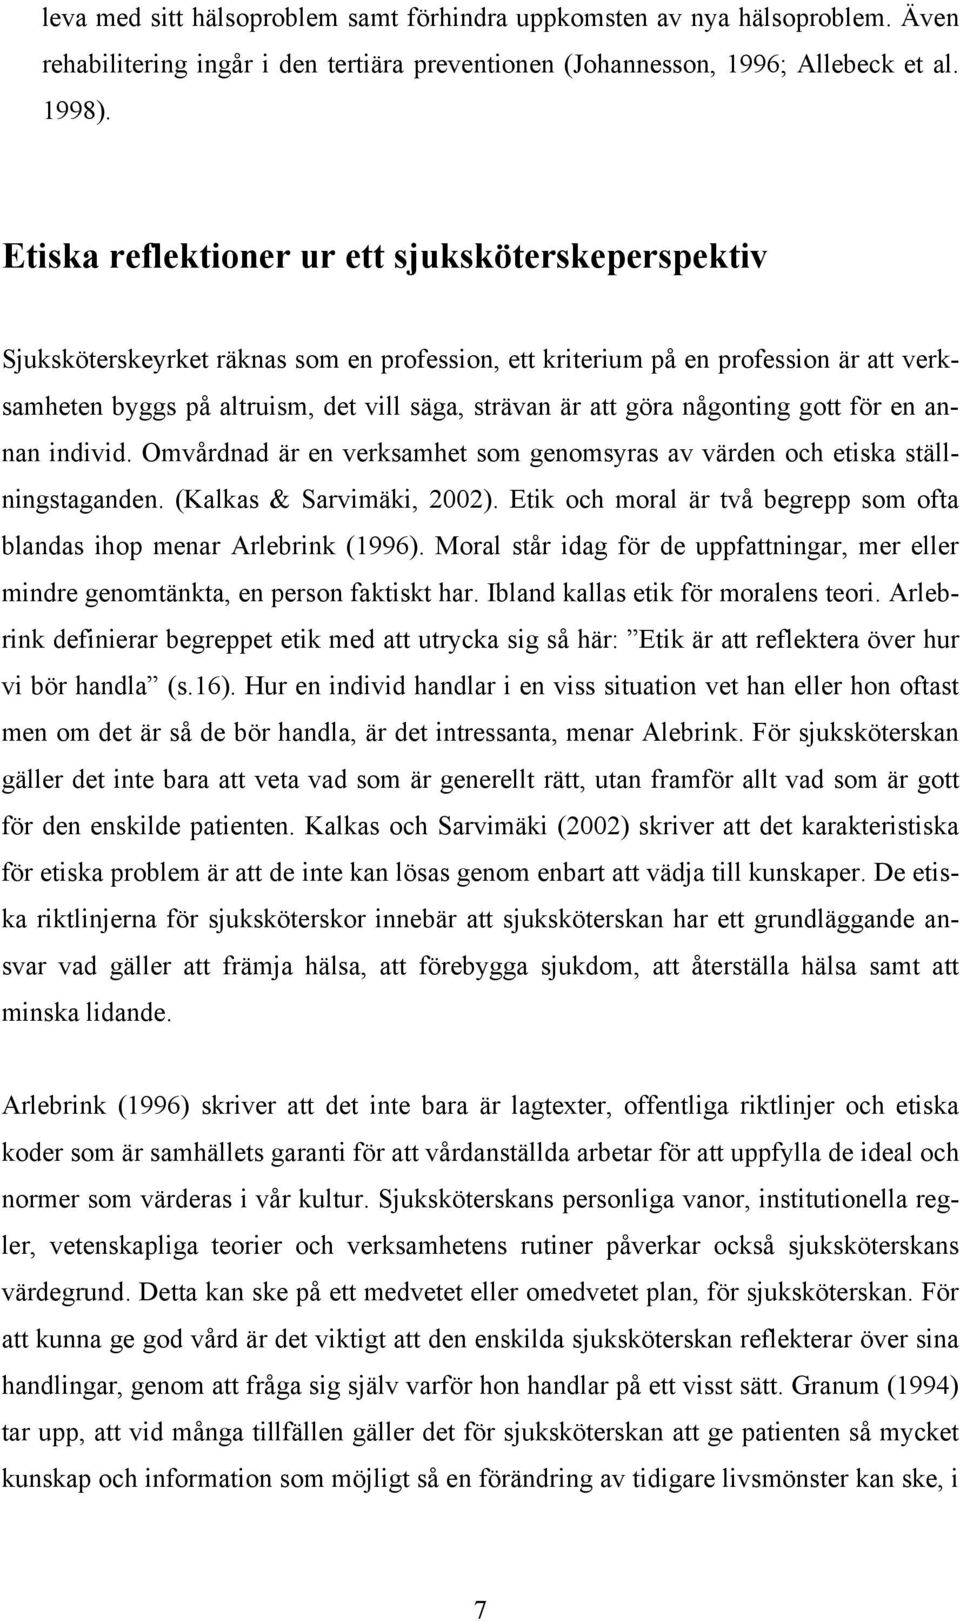 göra någonting gott för en annan individ. Omvårdnad är en verksamhet som genomsyras av värden och etiska ställningstaganden. (Kalkas & Sarvimäki, 2002).